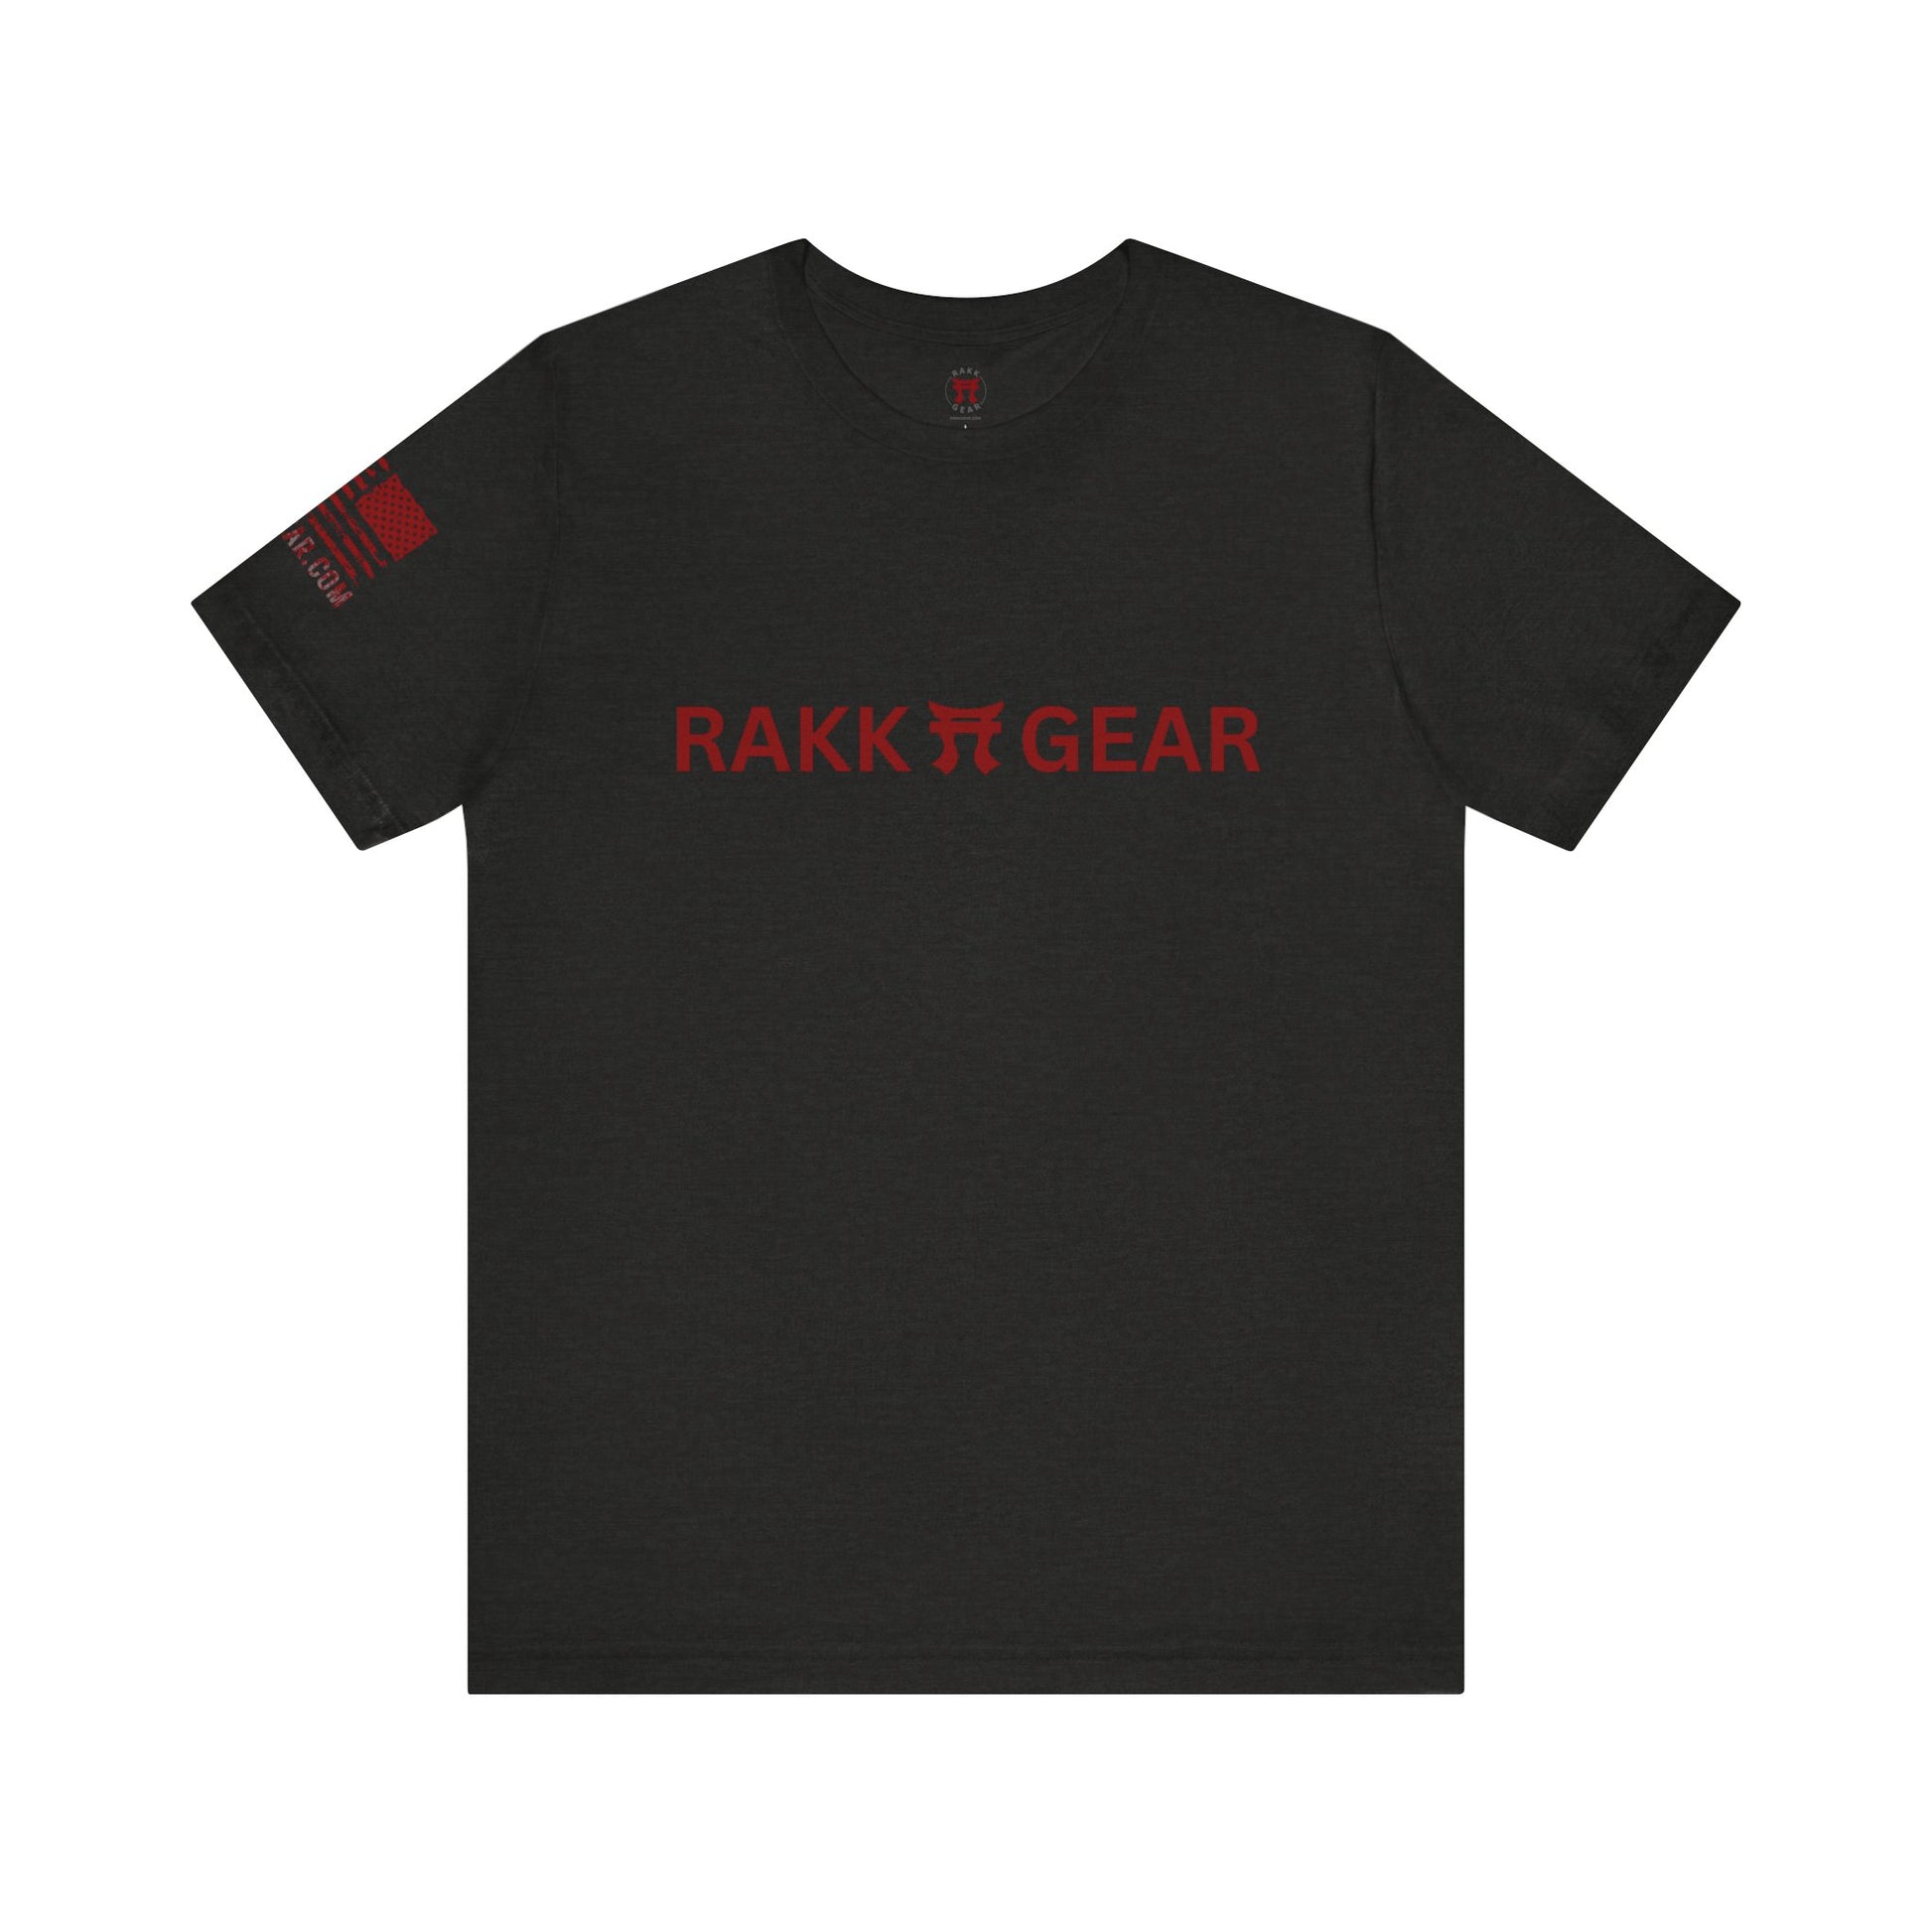 Rakkgear Logo Short Sleeve Tee in black